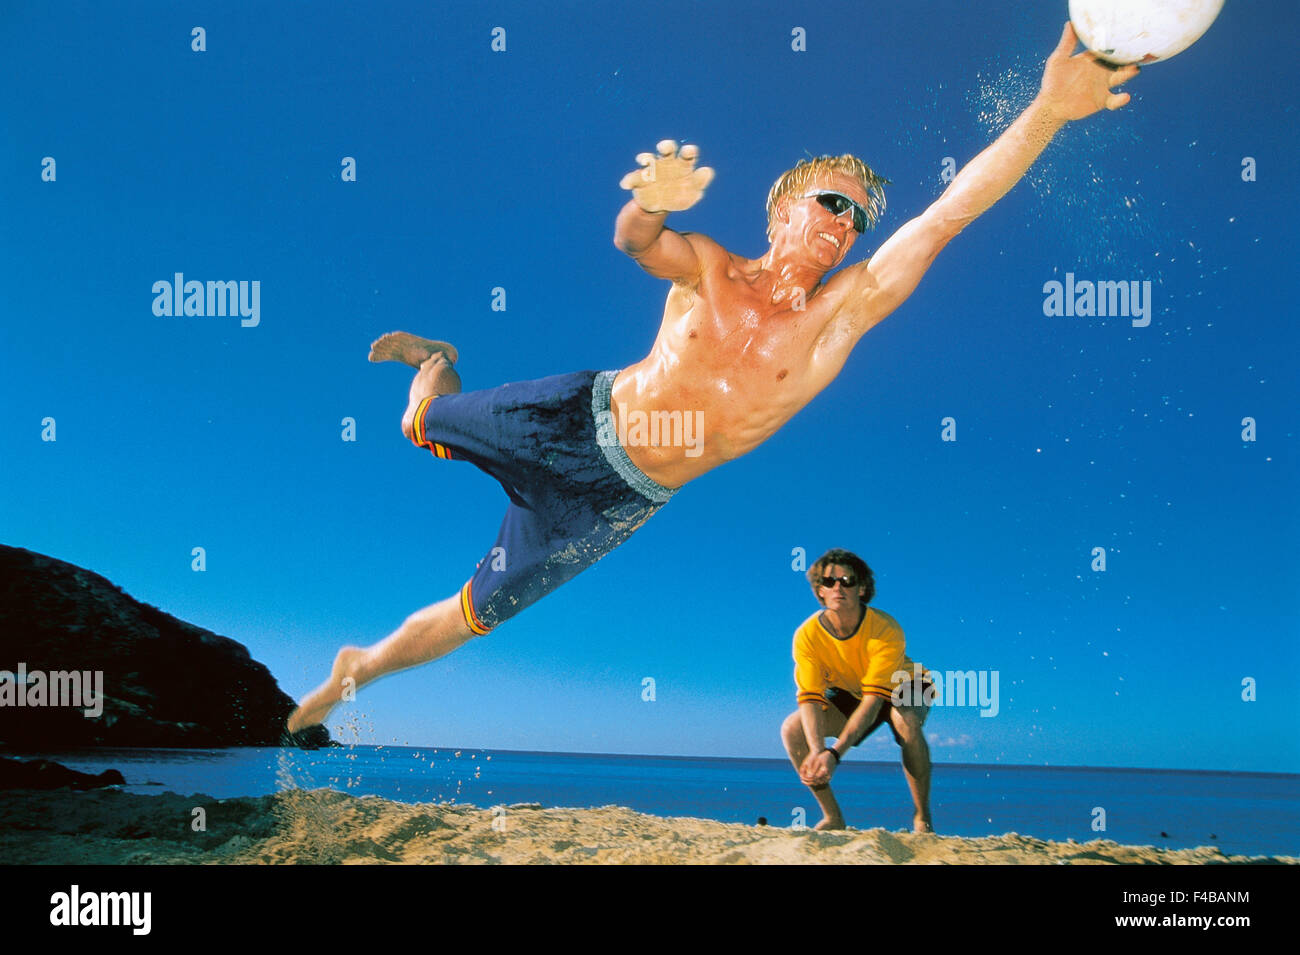 20-24 Jahre ball Aktivität Erwachsene nur Strand Strand Volleyball blond blaue Katalog 2 klaren Himmel Farbe Bild Freunde horizontale Stockfoto